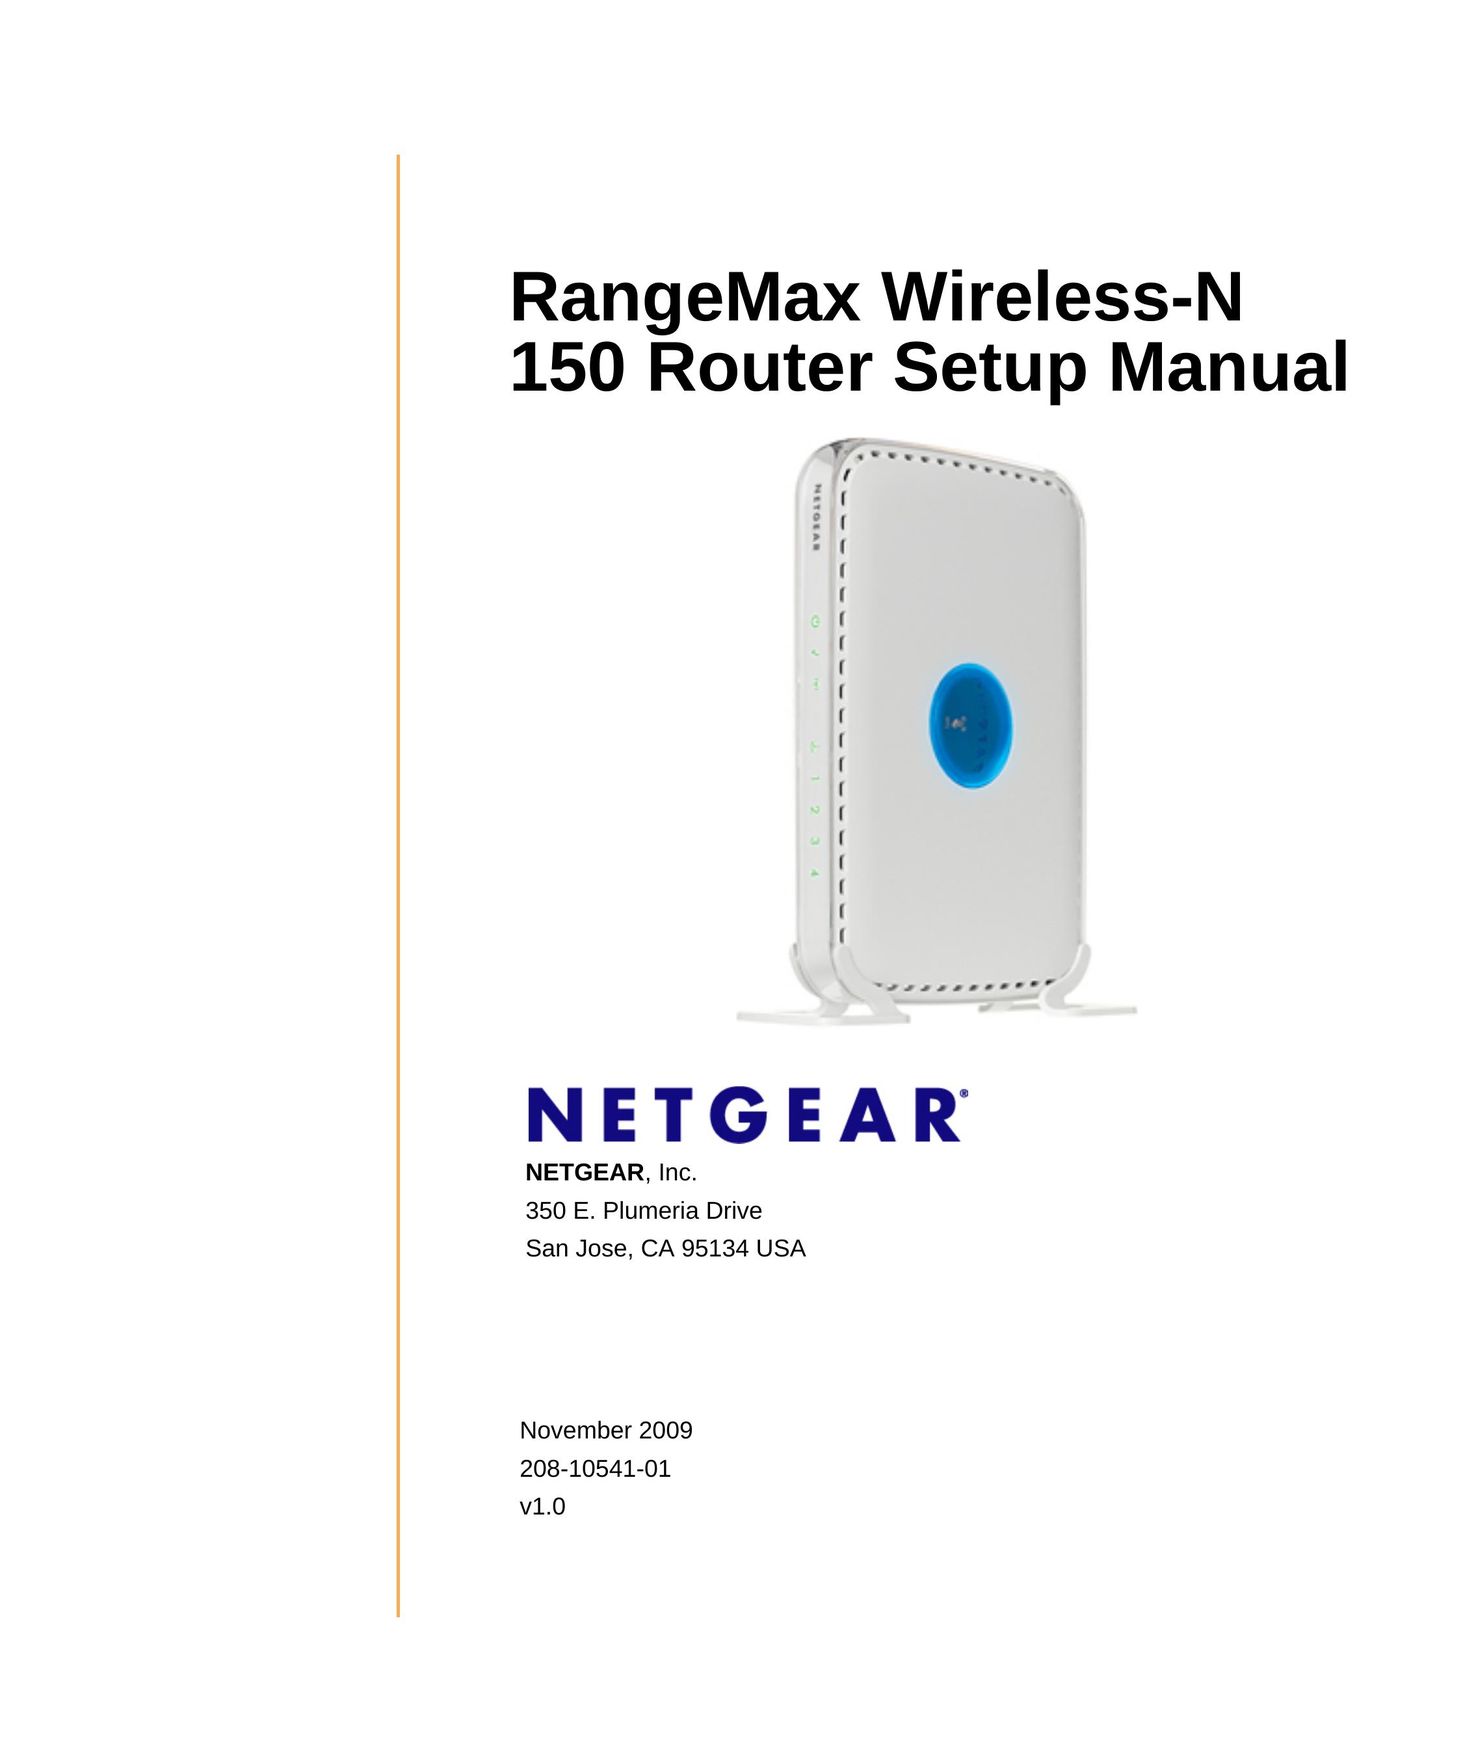 NETGEAR 208-10541-01 Network Router User Manual